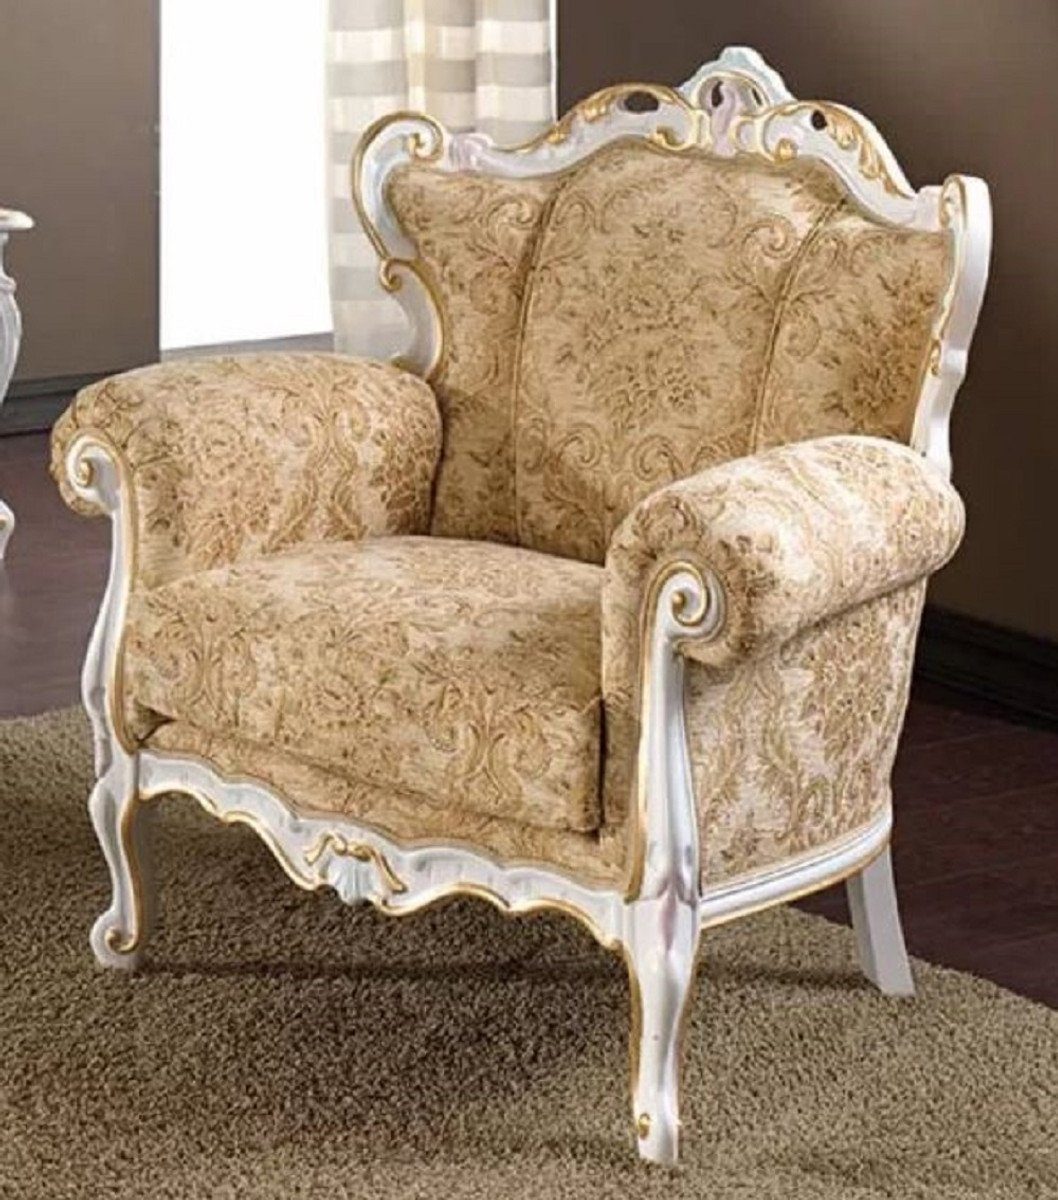 Casa Padrino Sessel Luxus Barock Sessel Beige / Weiß / Gold - Edler Wohnzimmer Sessel mit elegantem Muster - Barock Möbel - Luxus Qualität - Made in Italy